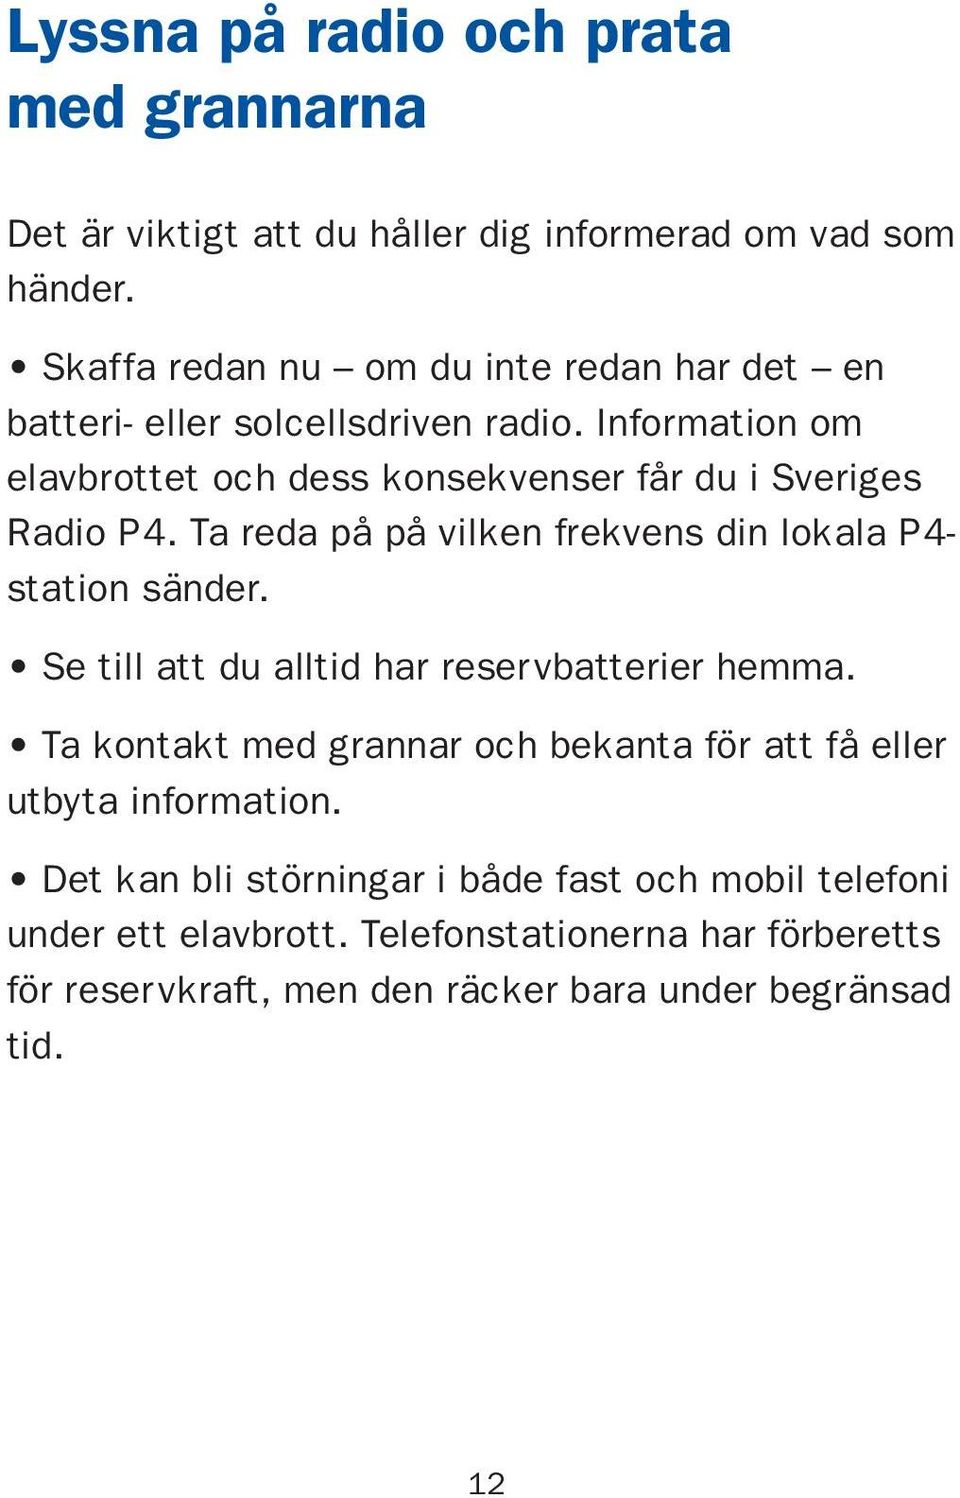 Information om elavbrottet och dess konsekvenser får du i Sveriges Radio P4. Ta reda på på vilken frekvens din lokala P4- station sänder.